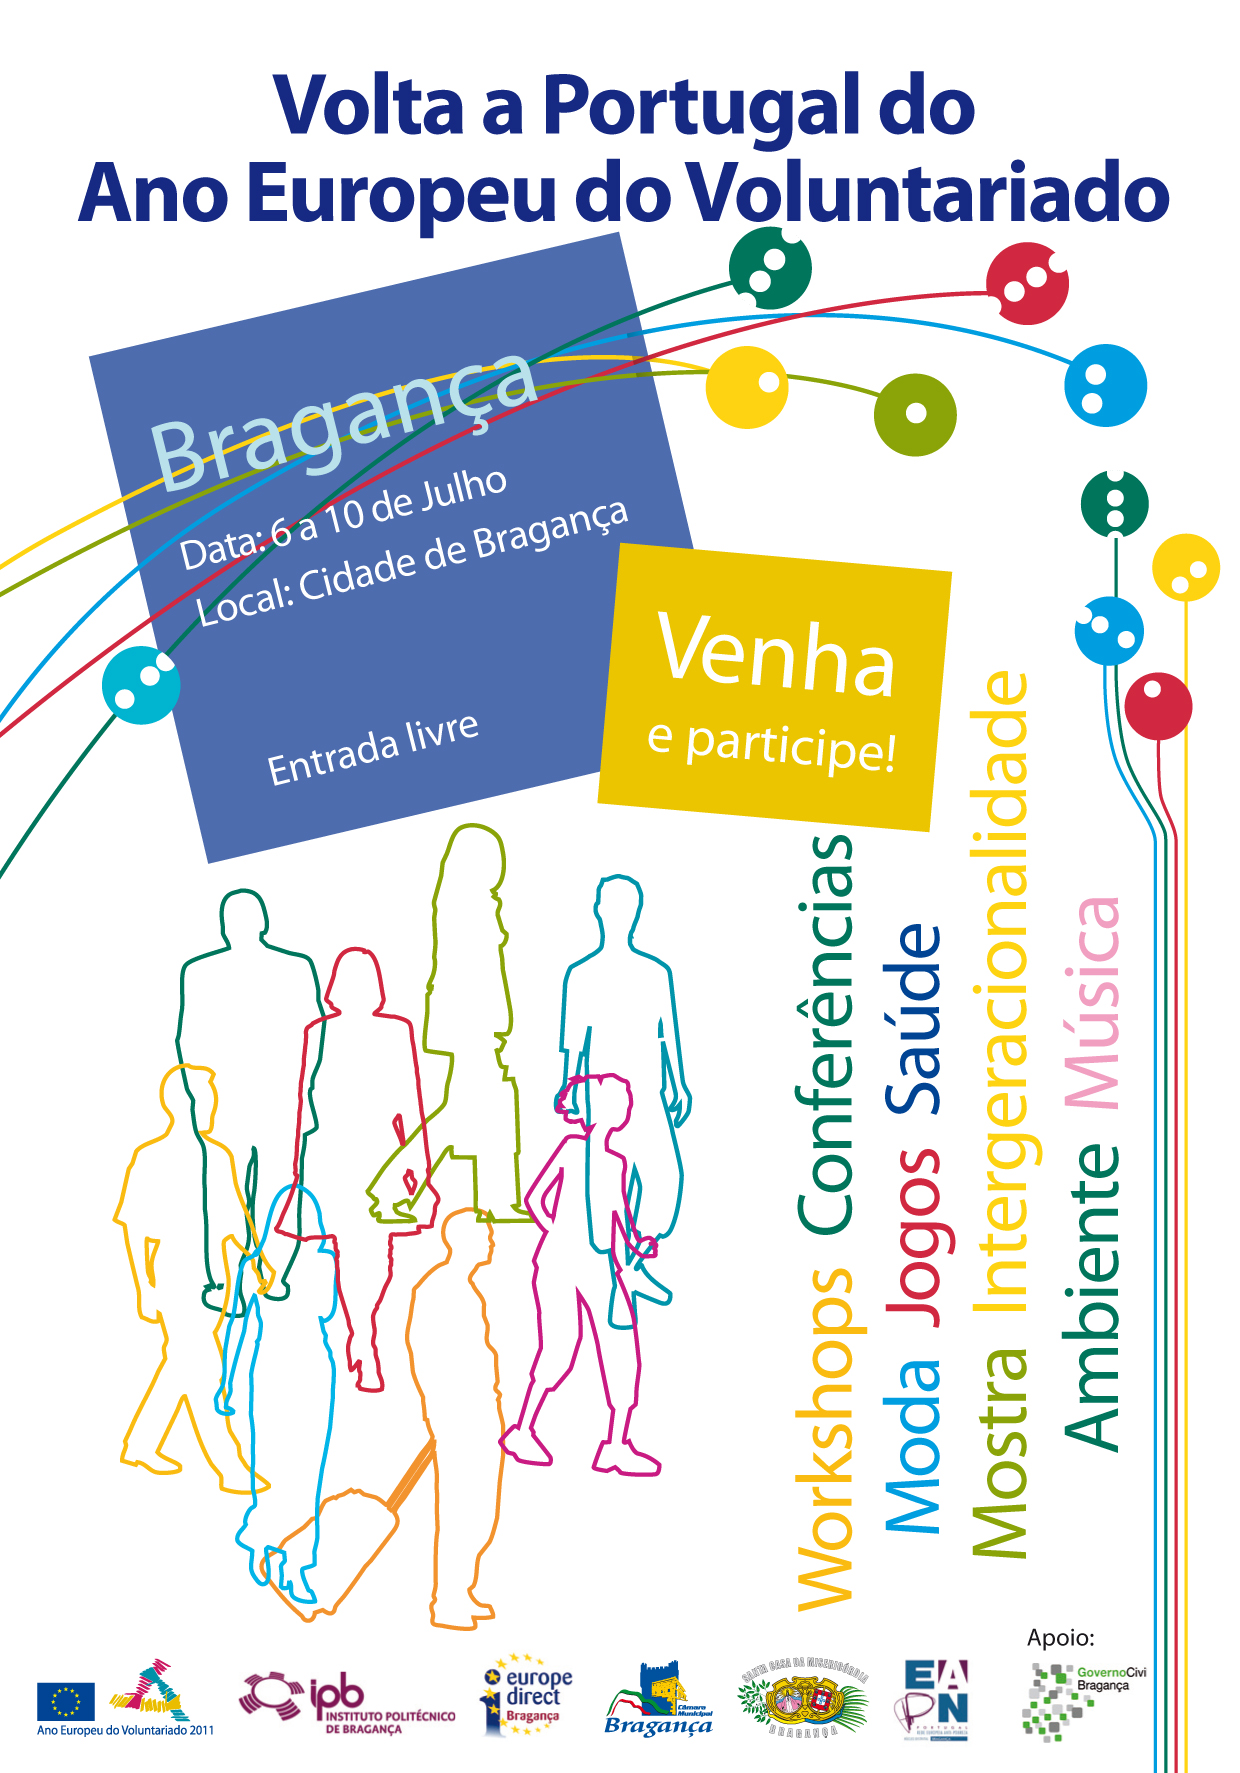 Volta a Portugal do Ano Europeu do Voluntariado – Bragança 6 a 10 de Julho